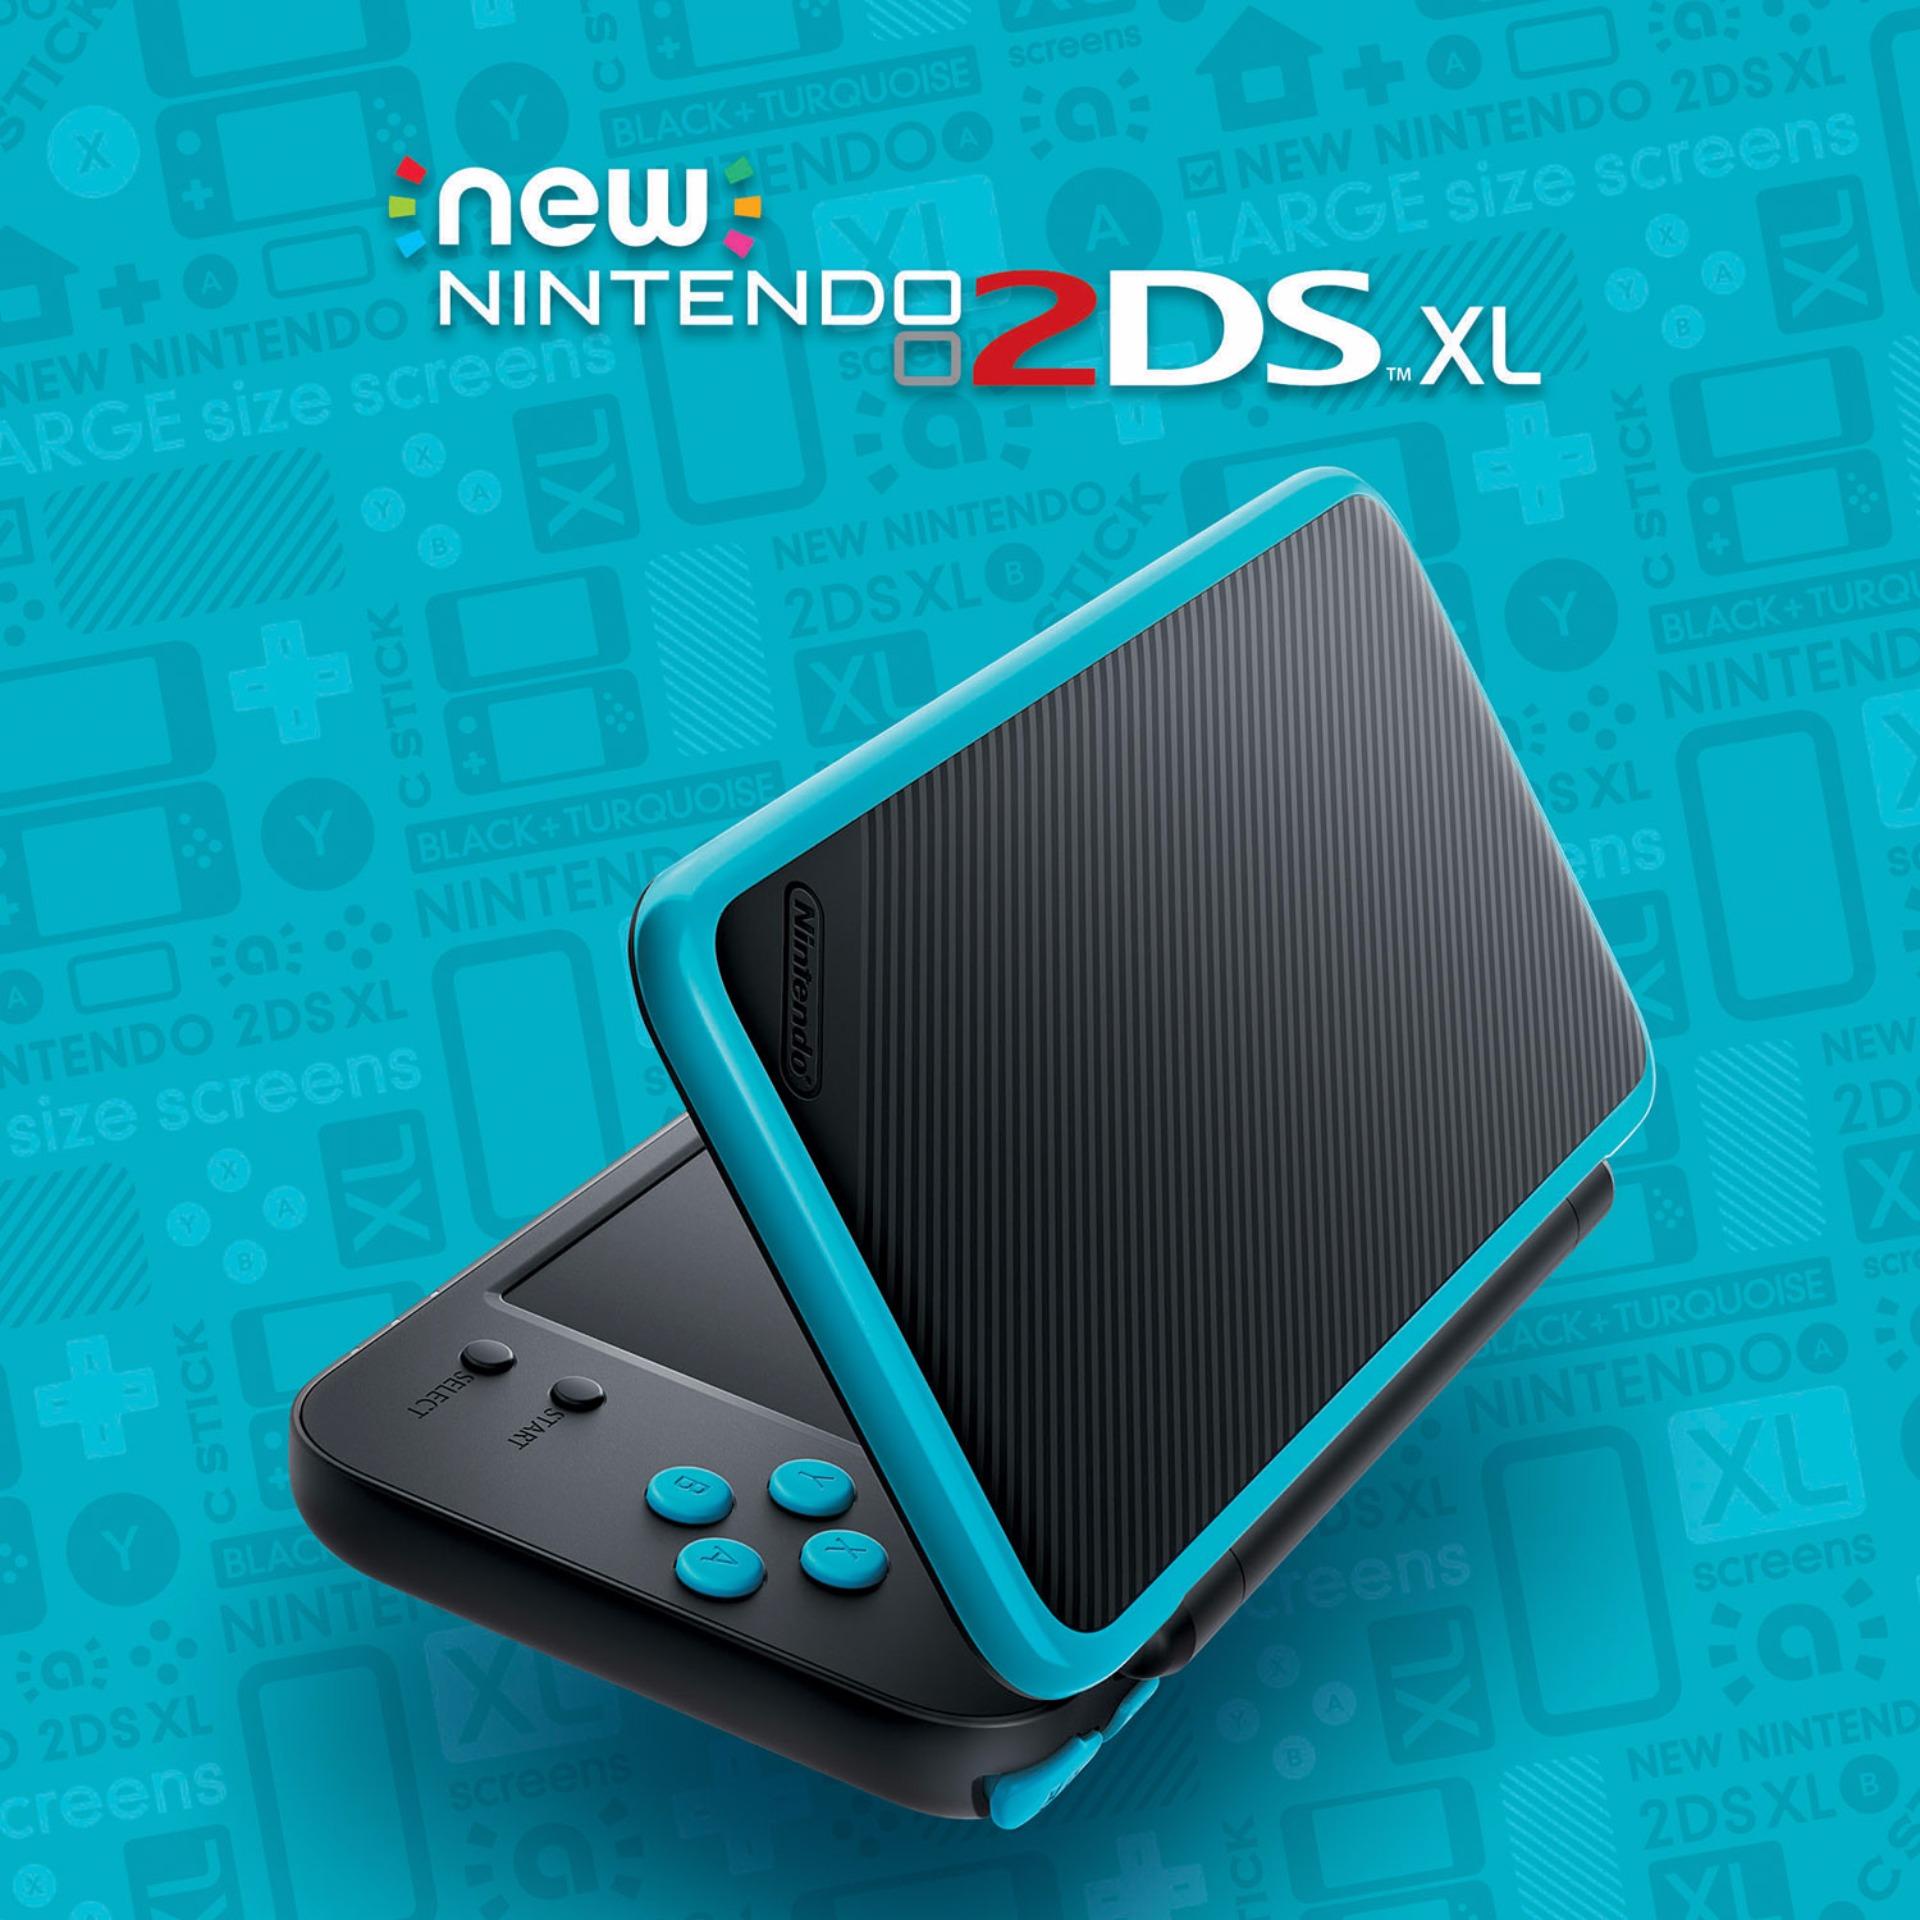 Máy Chơi Game Nintendo New 2DS XL và Thẻ Nhớ 32G (Hacked)